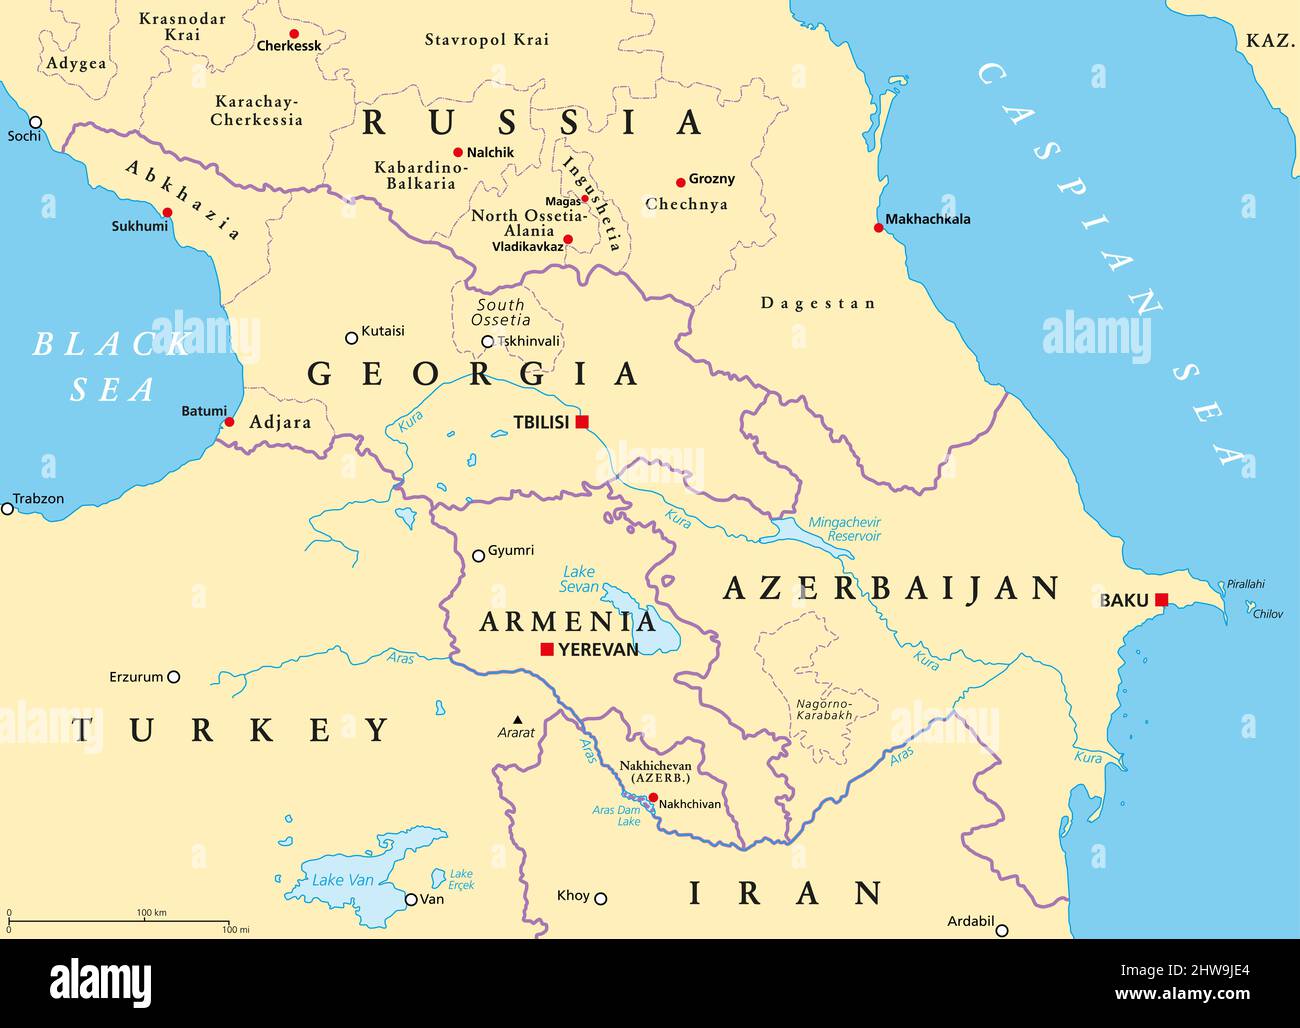 Caucasus Map Europe